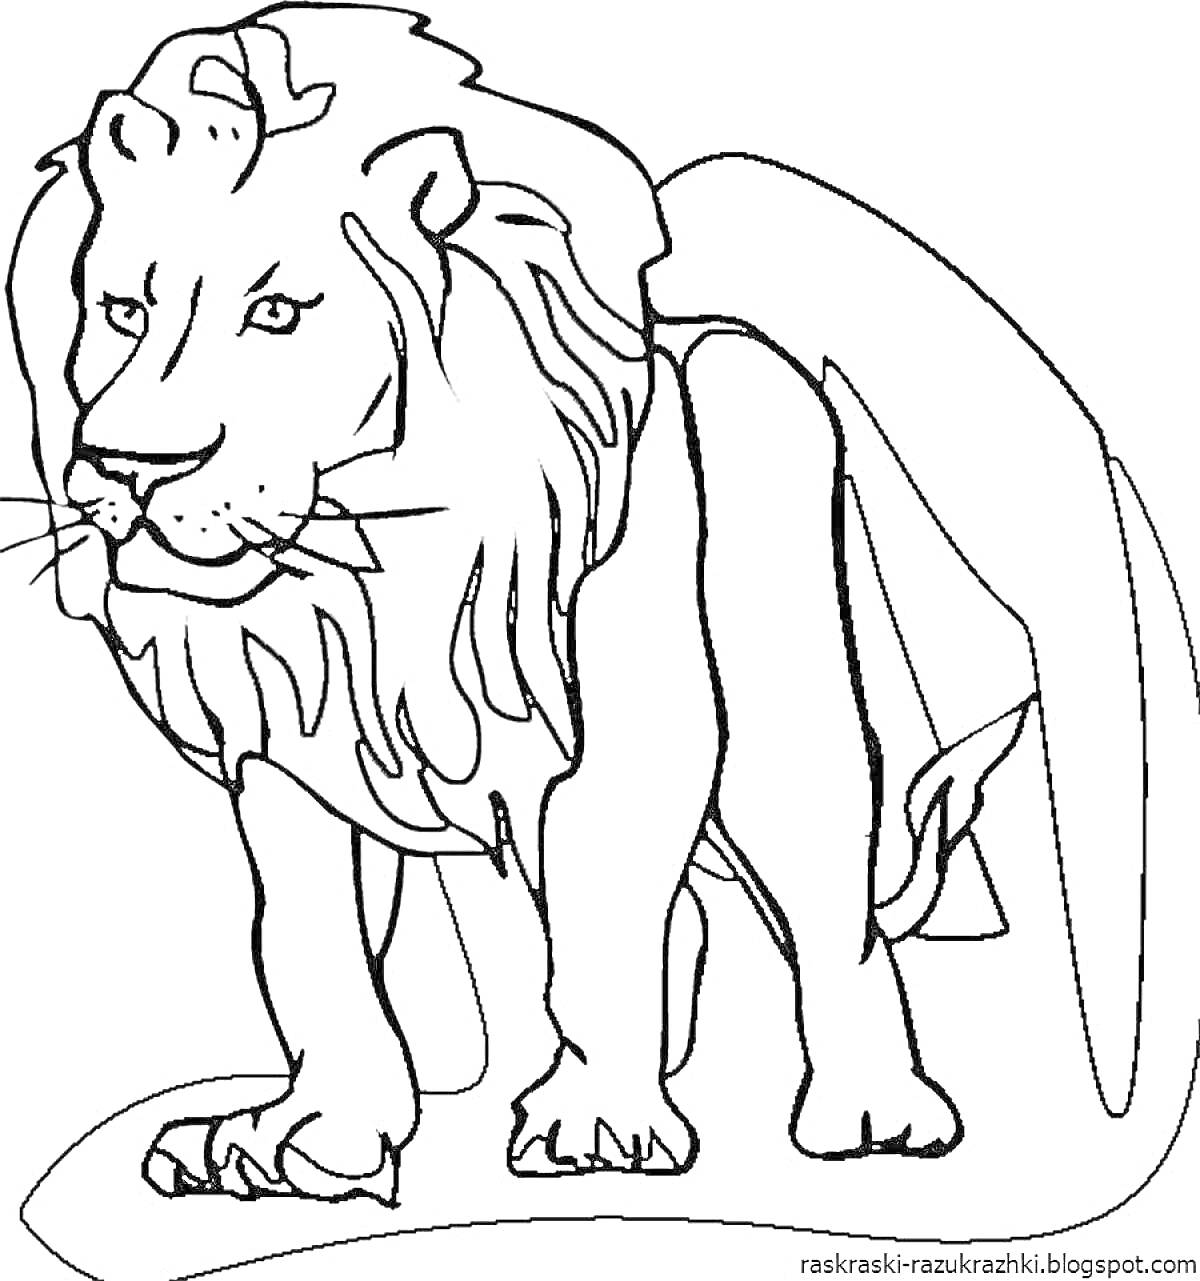 Раскраска Лев, стоящий на земле со свисающей гривой